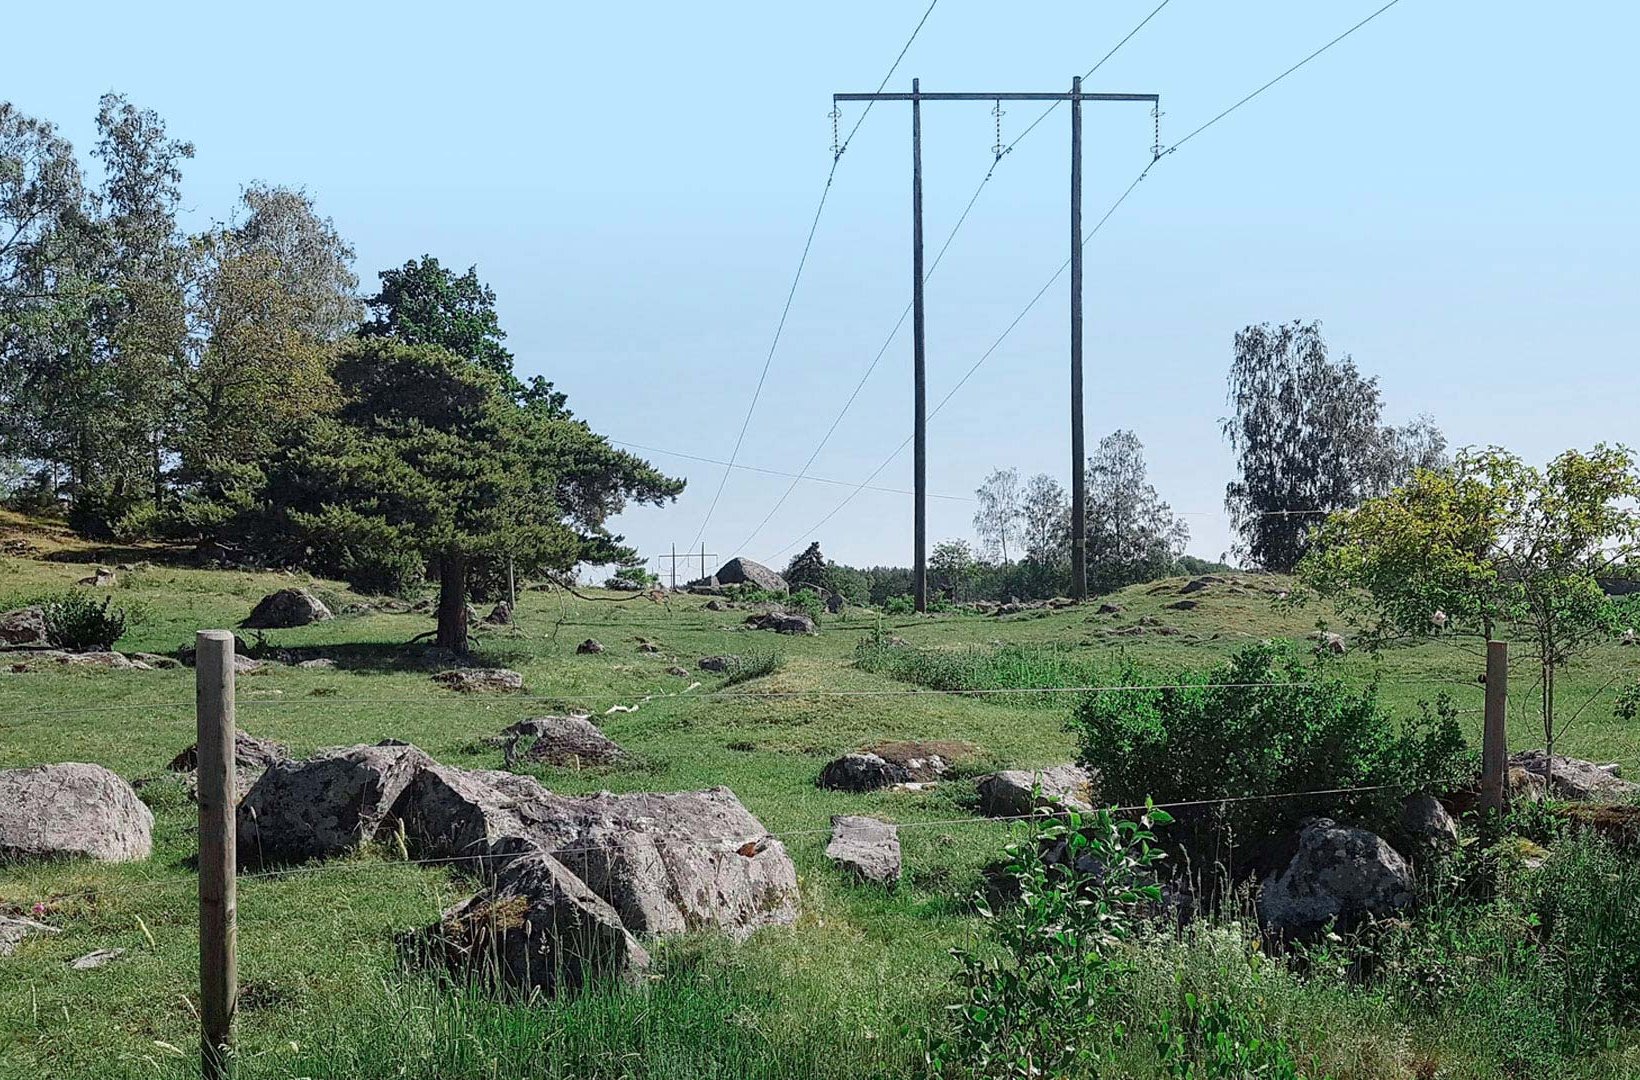 Power lines across a green field